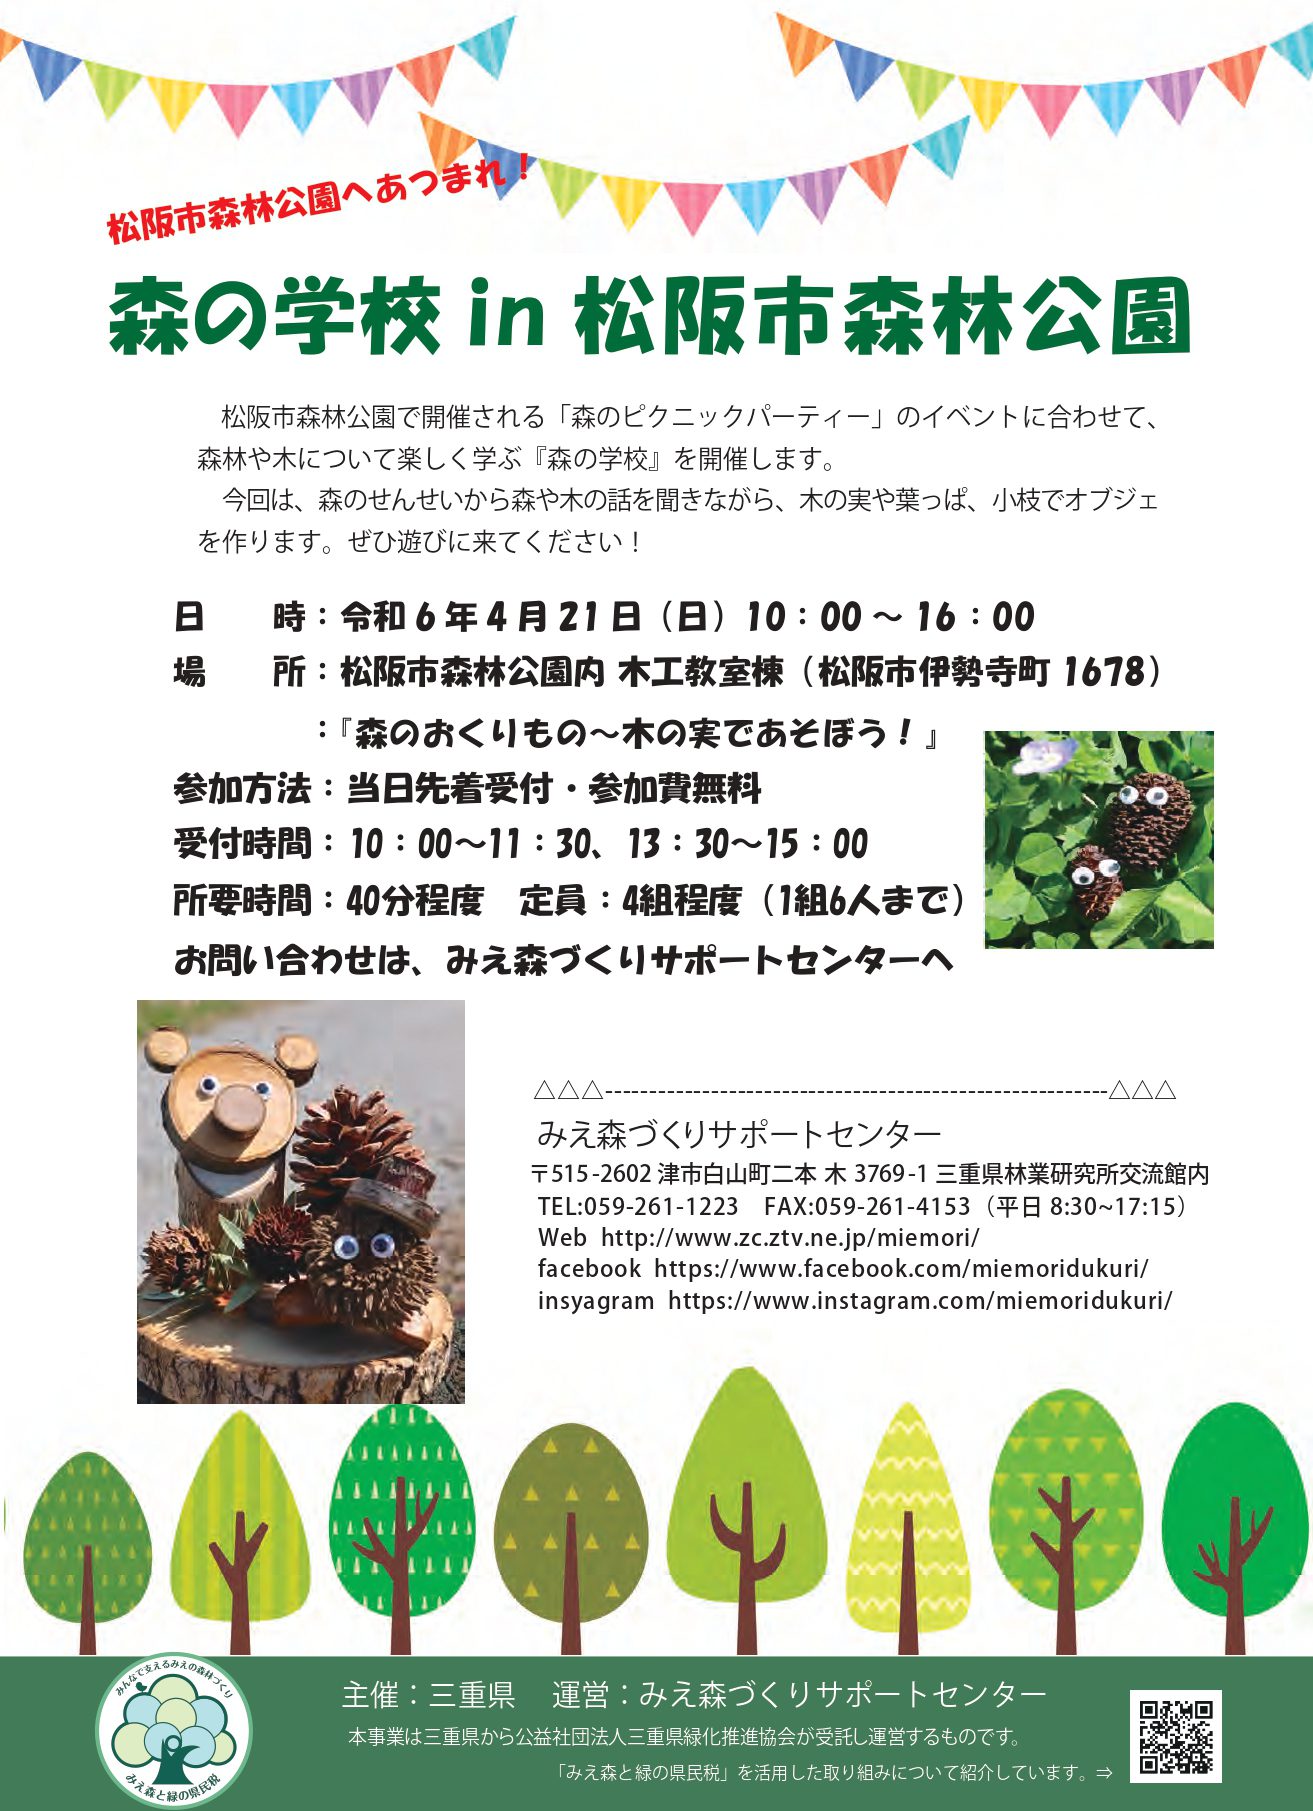 4月21日(日)「森の学校in松阪市森林公園」開催のお知らせ